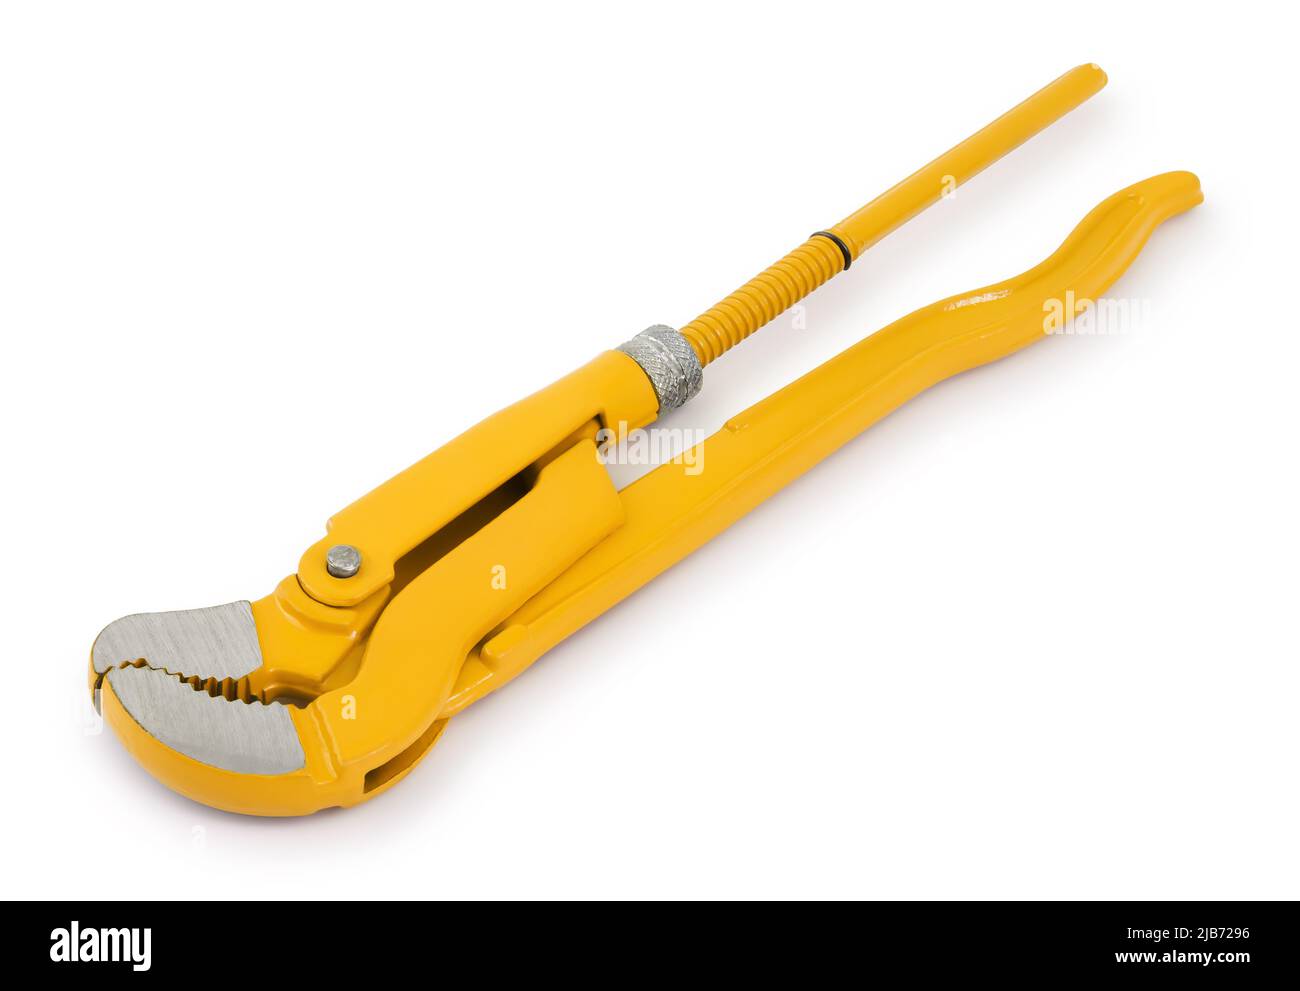 Chiave per idraulico, utensile per costruzioni o lavori industriali, colorata in giallo isolata su sfondo bianco. Foto Stock